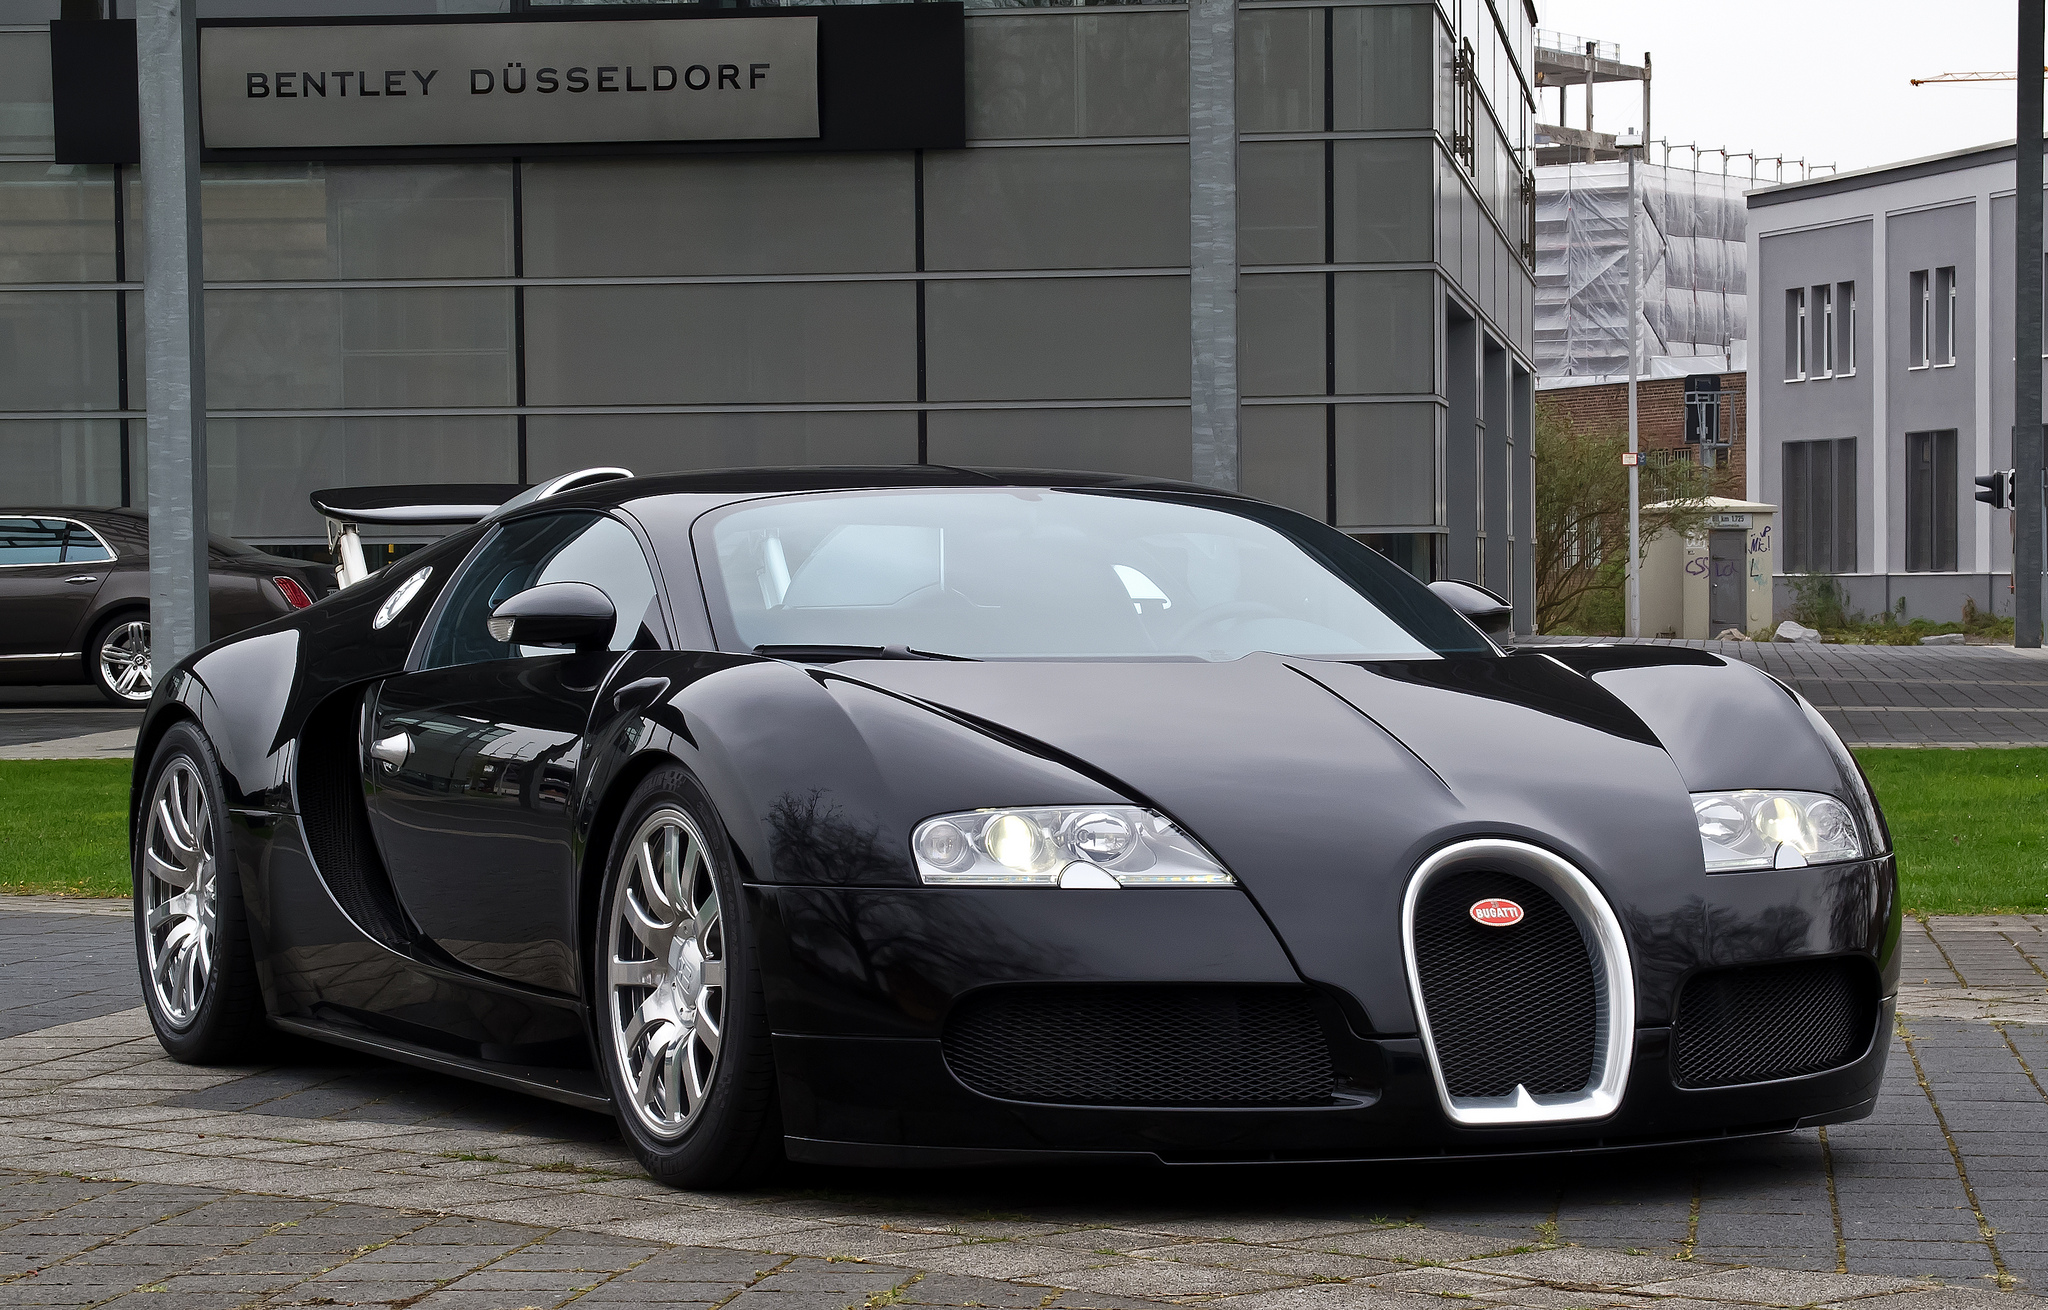 The Bugatti Veyron.
